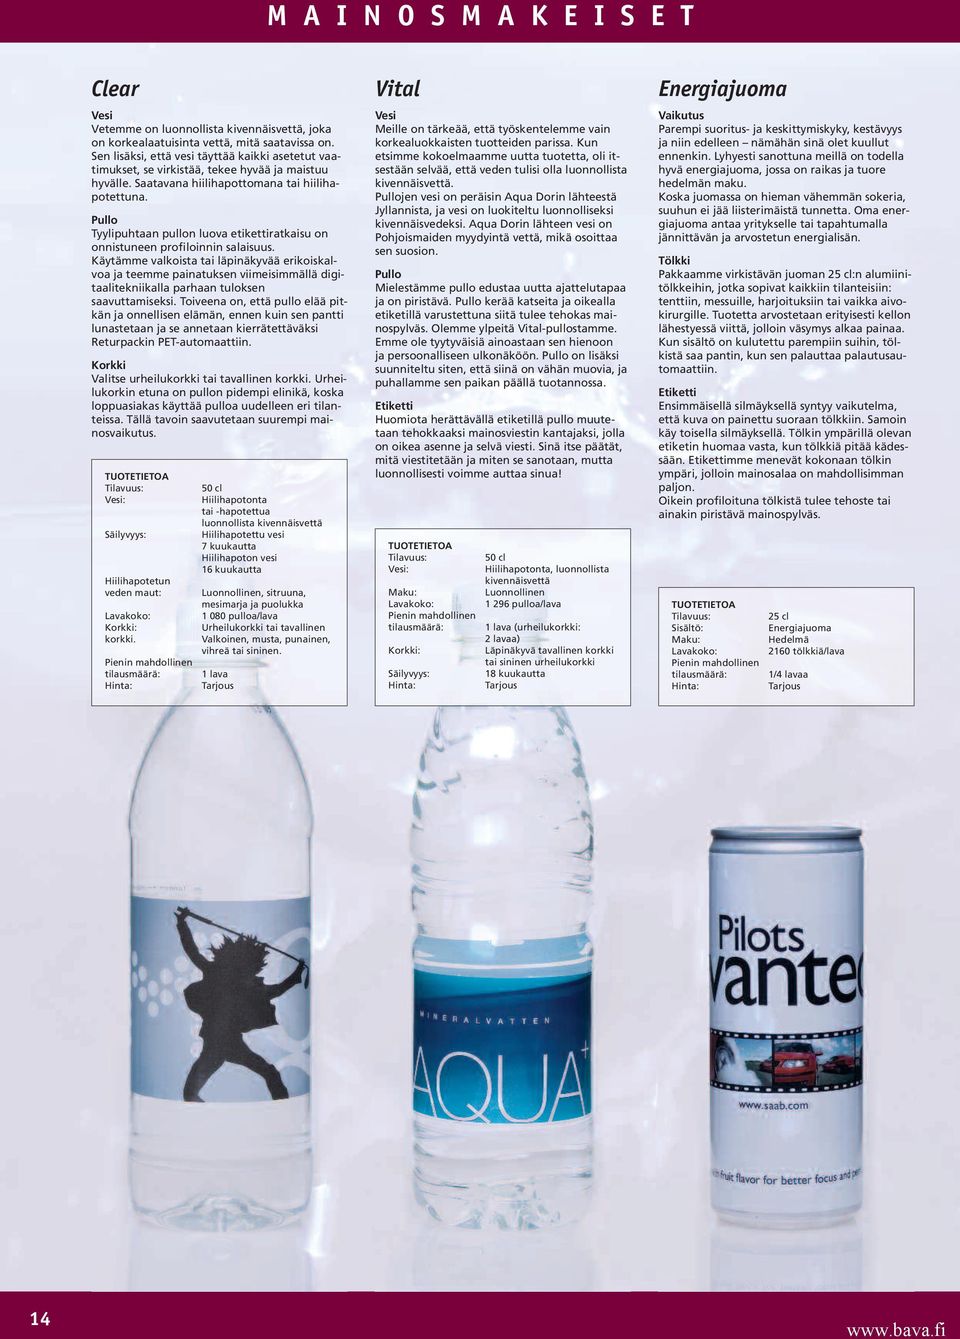 Pullo Tyylipuhtaan pullon luova etikettiratkaisu on onnistuneen profiloinnin salaisuus.